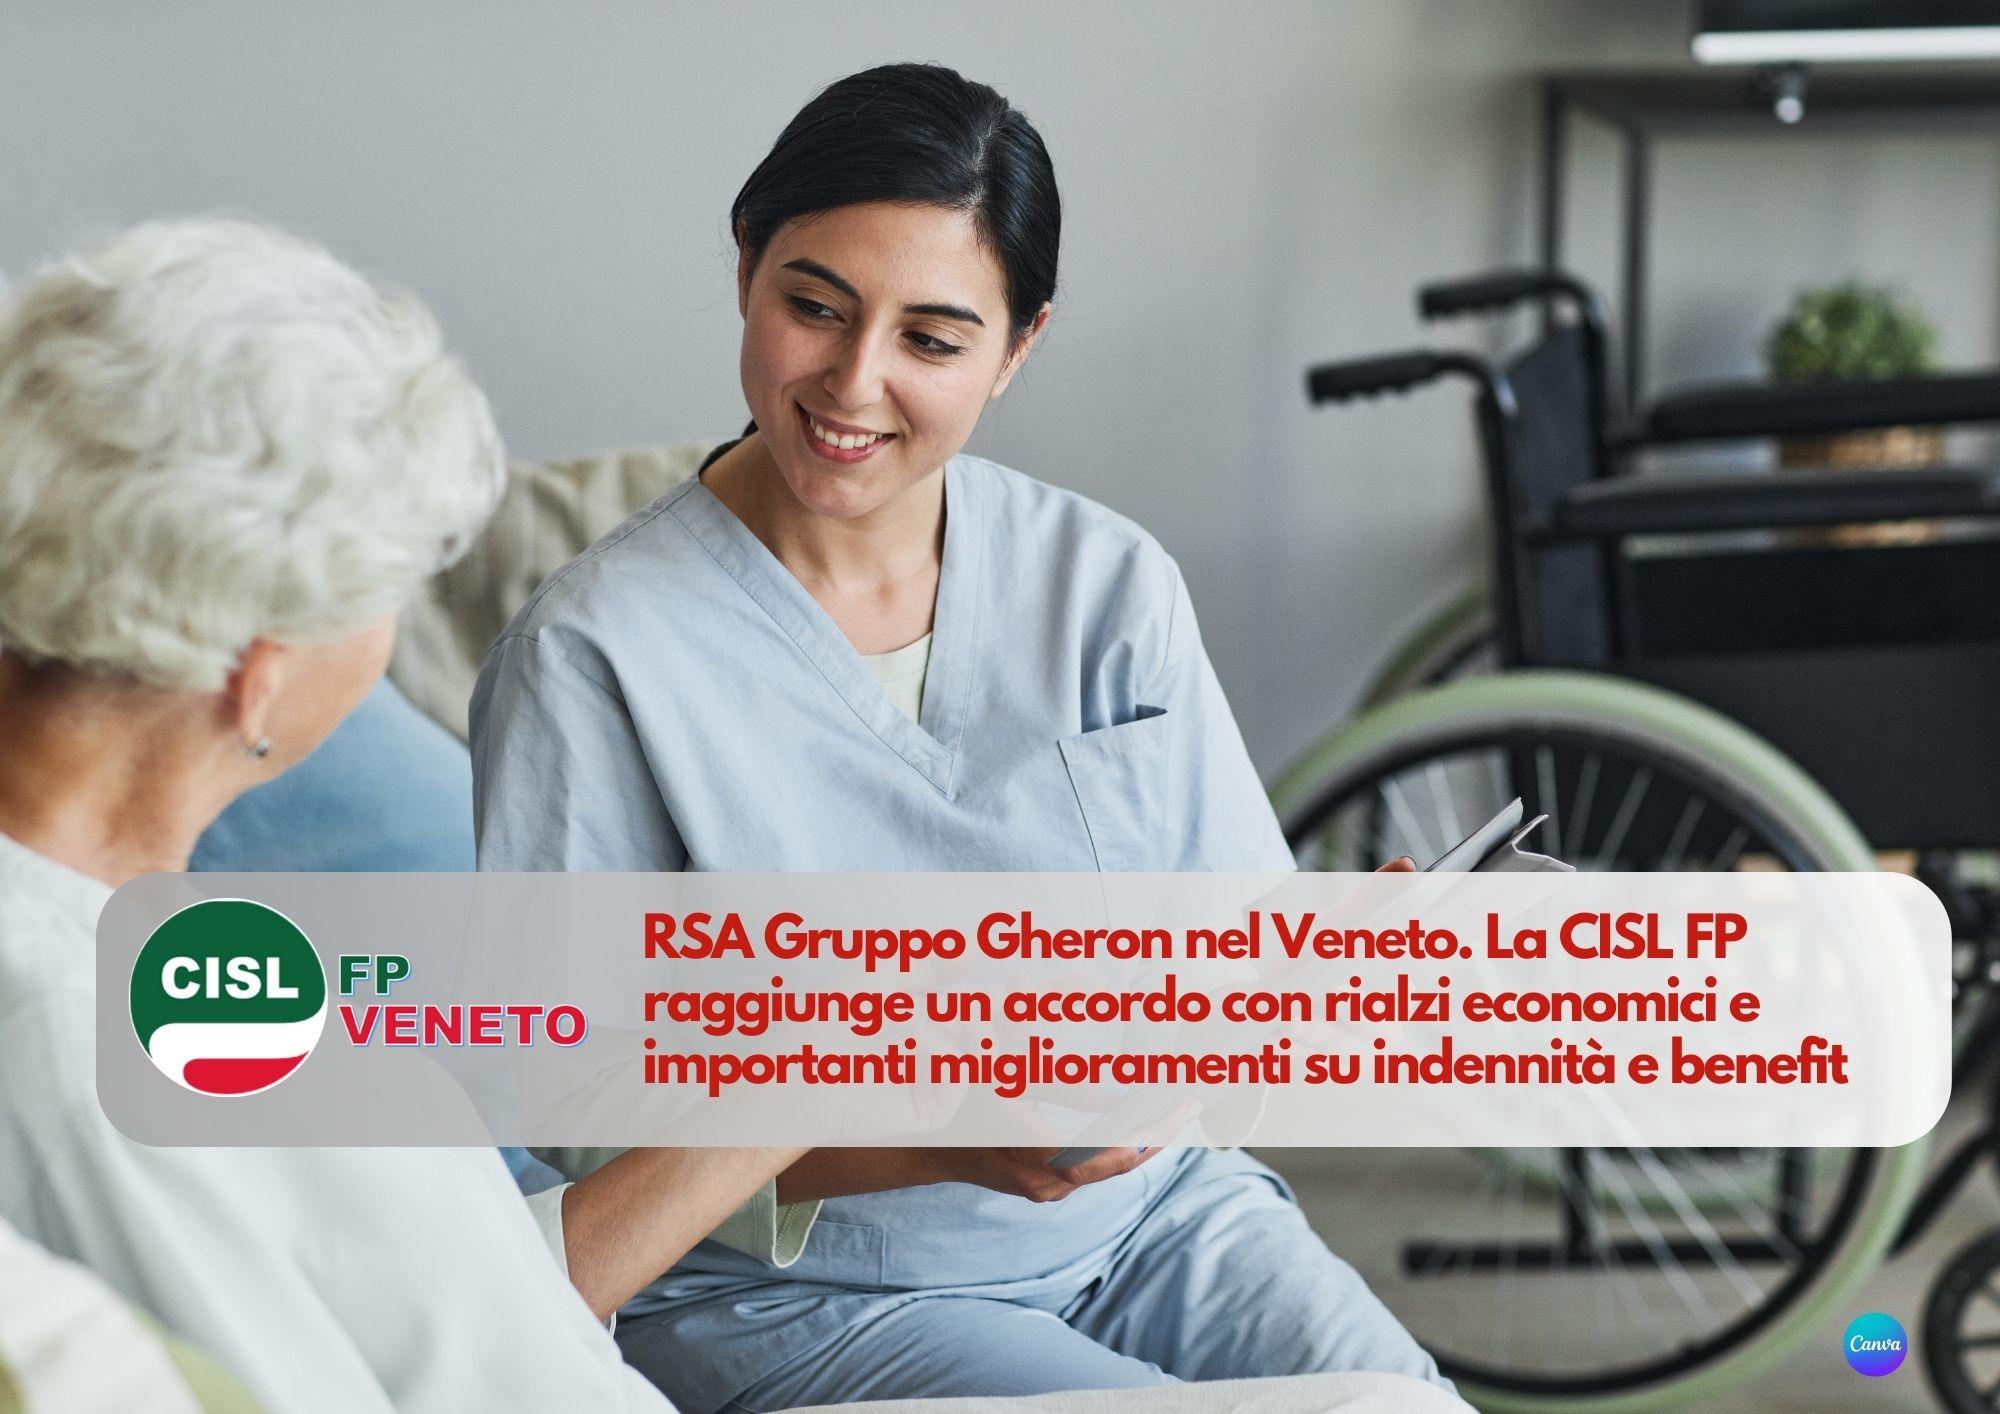 CISL FP Veneto. Accordo per migliorare stipendi e assistenza nelle strutture del Gruppo Gheron